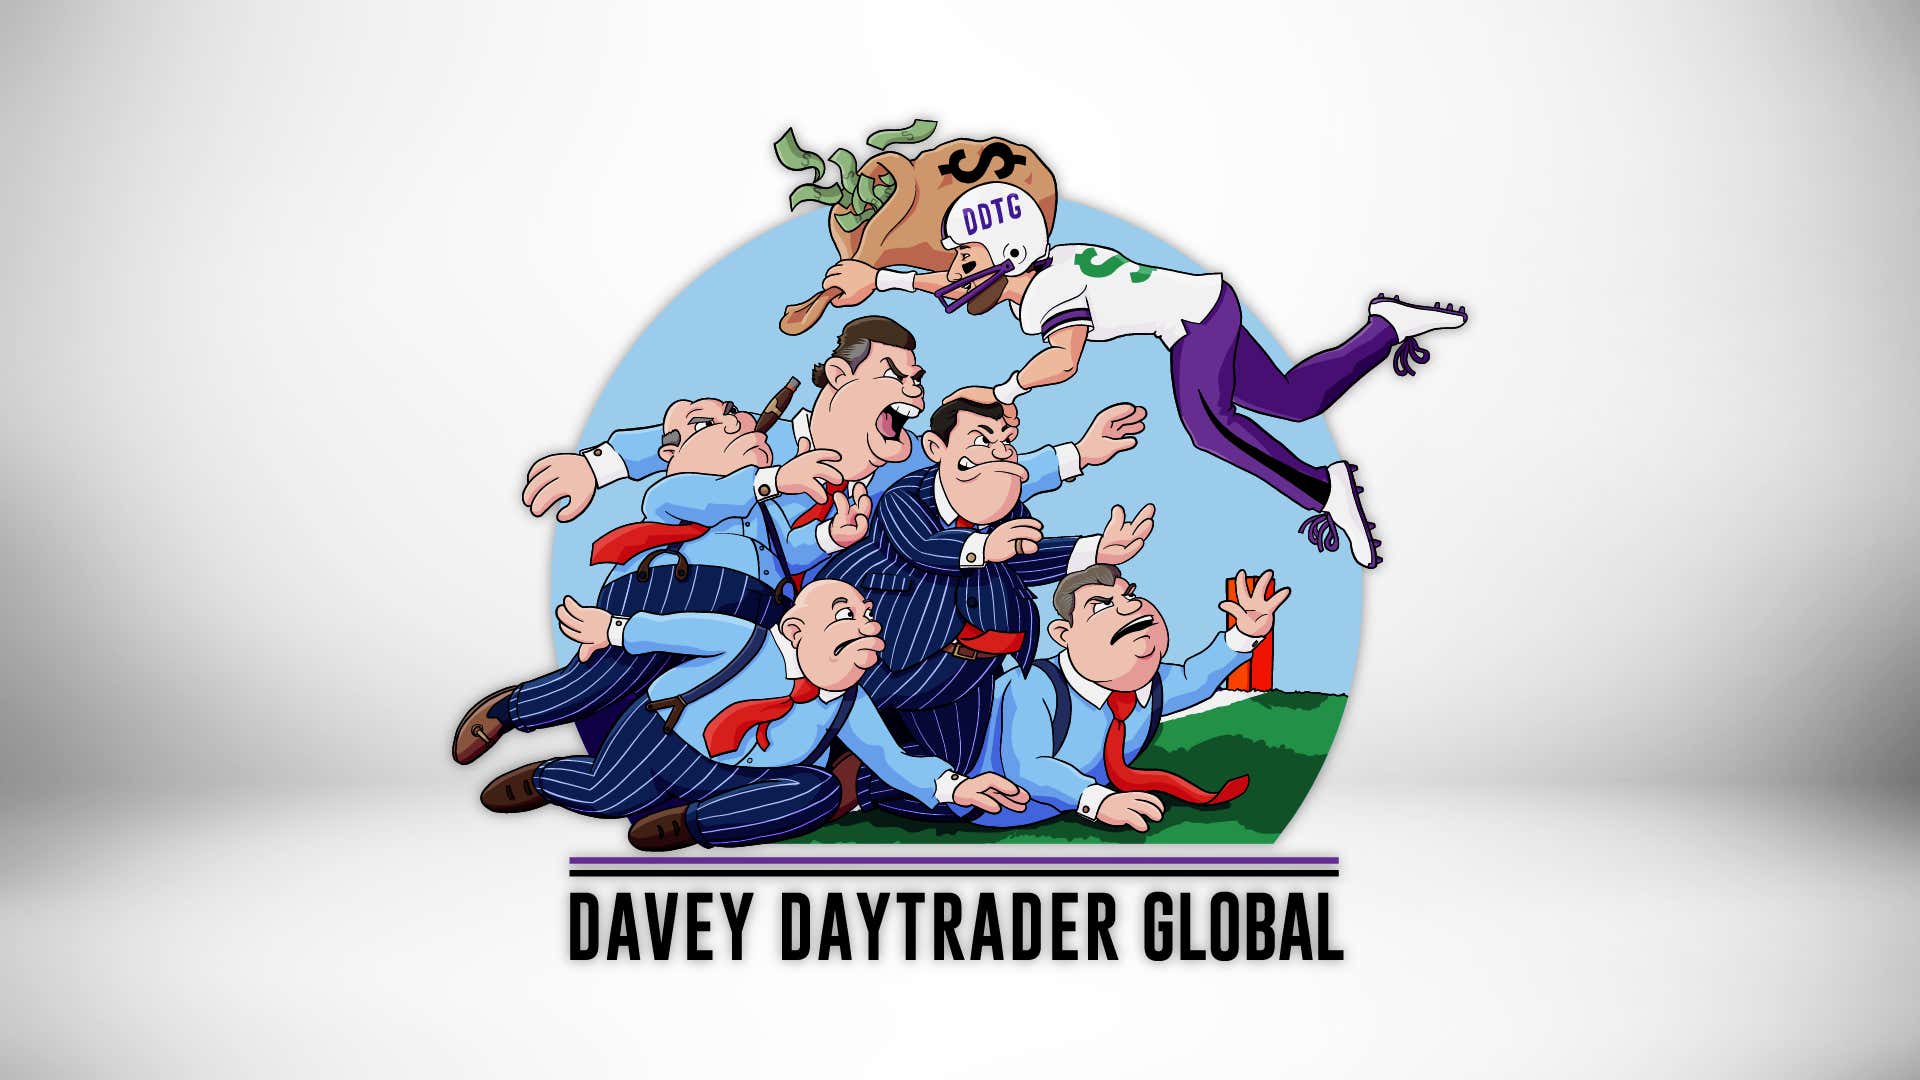 Davey Day Trader – August 13, 2020